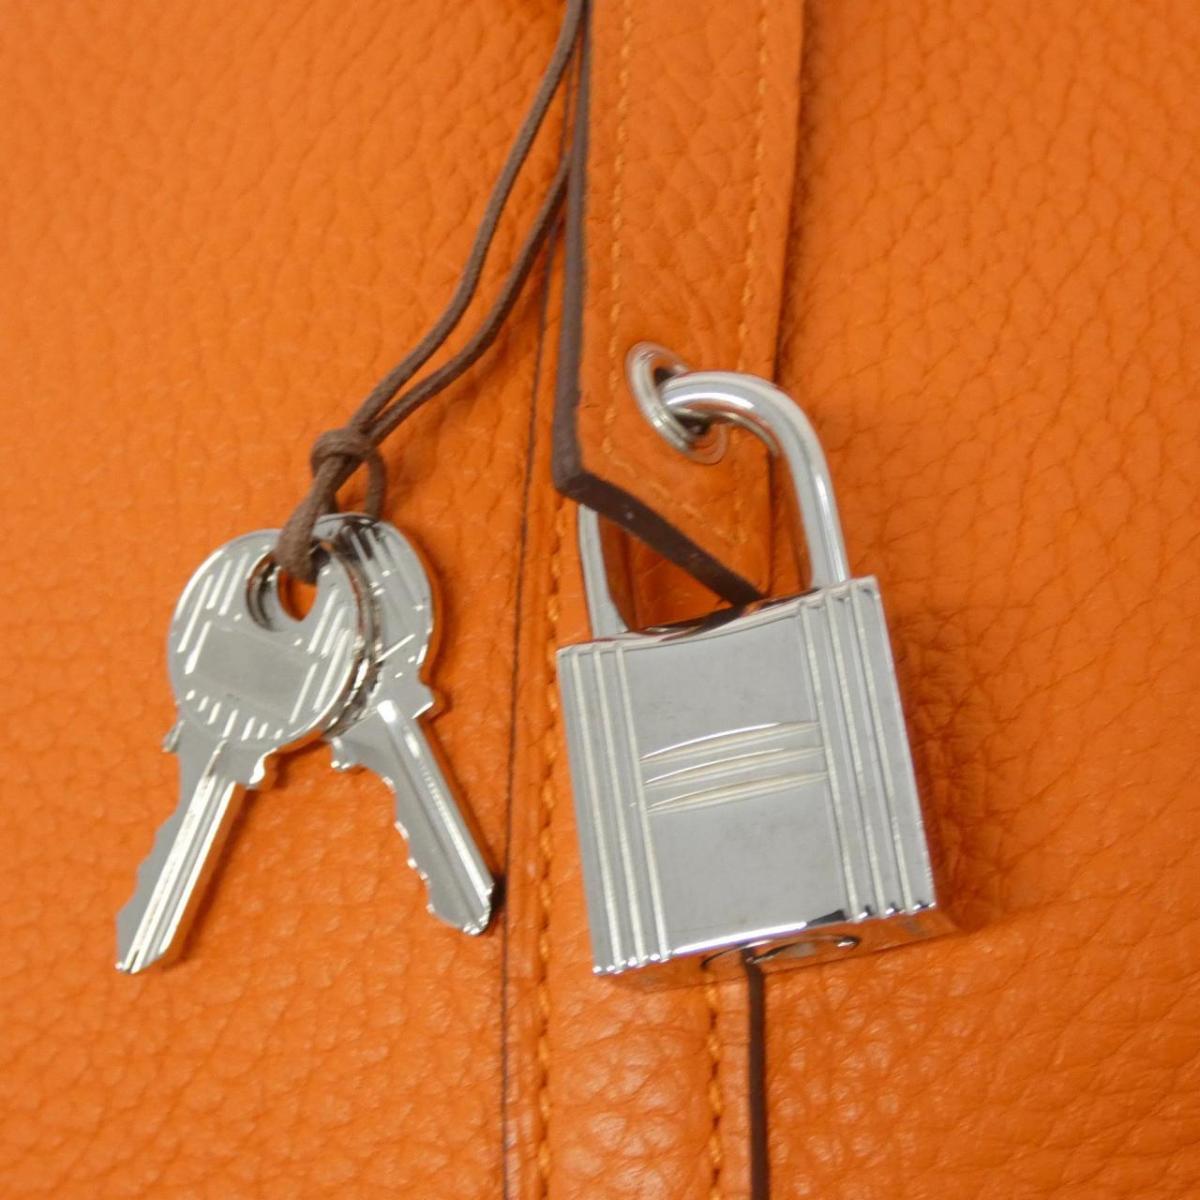 Hermes Picotin Lock PM 056289CK Bag